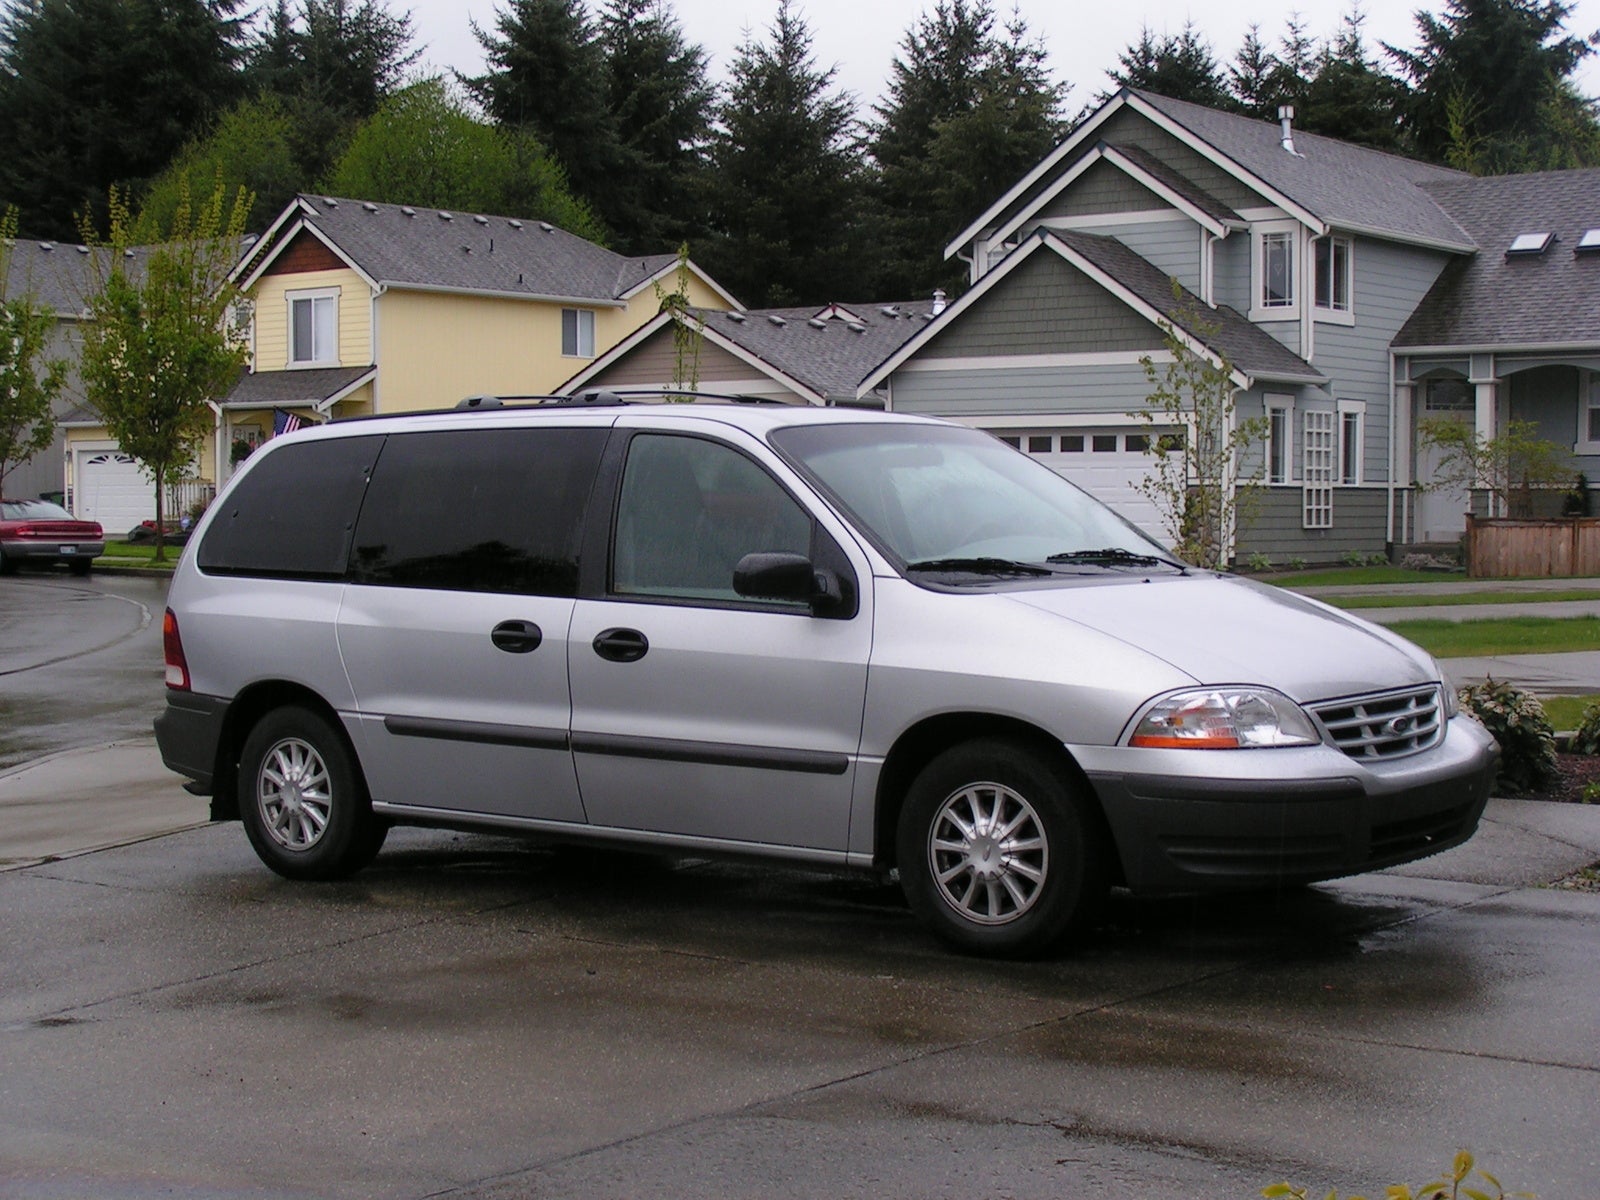 1999 Ford windstar passenger lx minivan #1